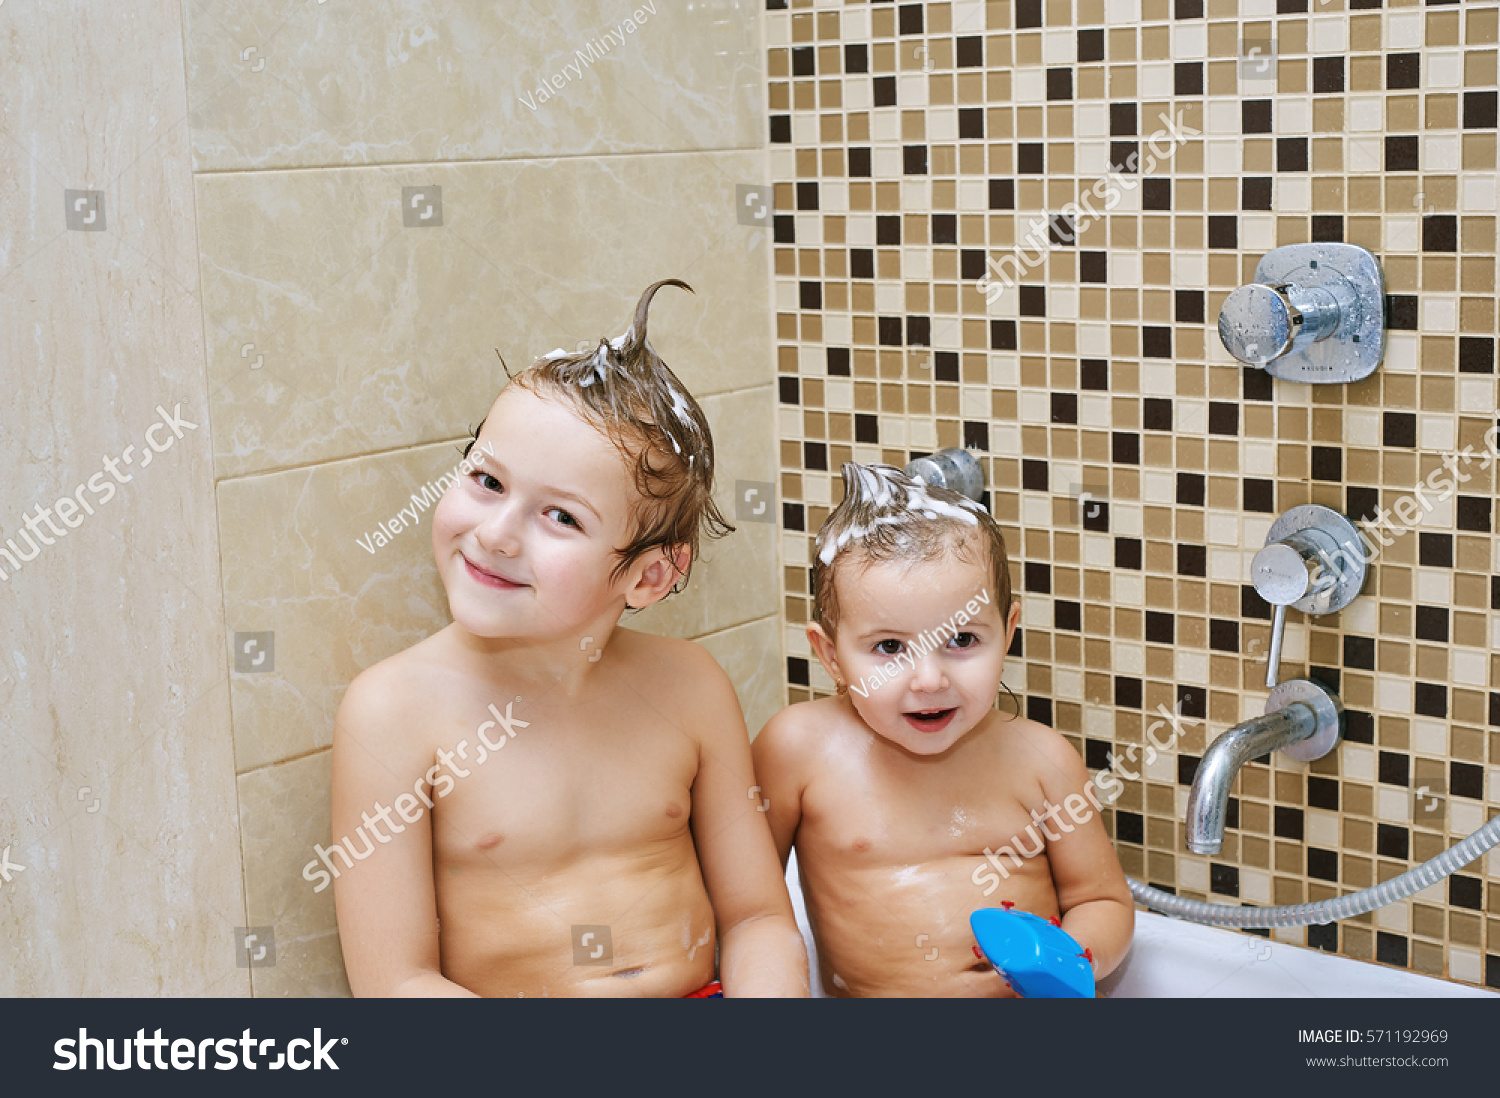 Брат наблюдает как сводная сестра купается в ванной